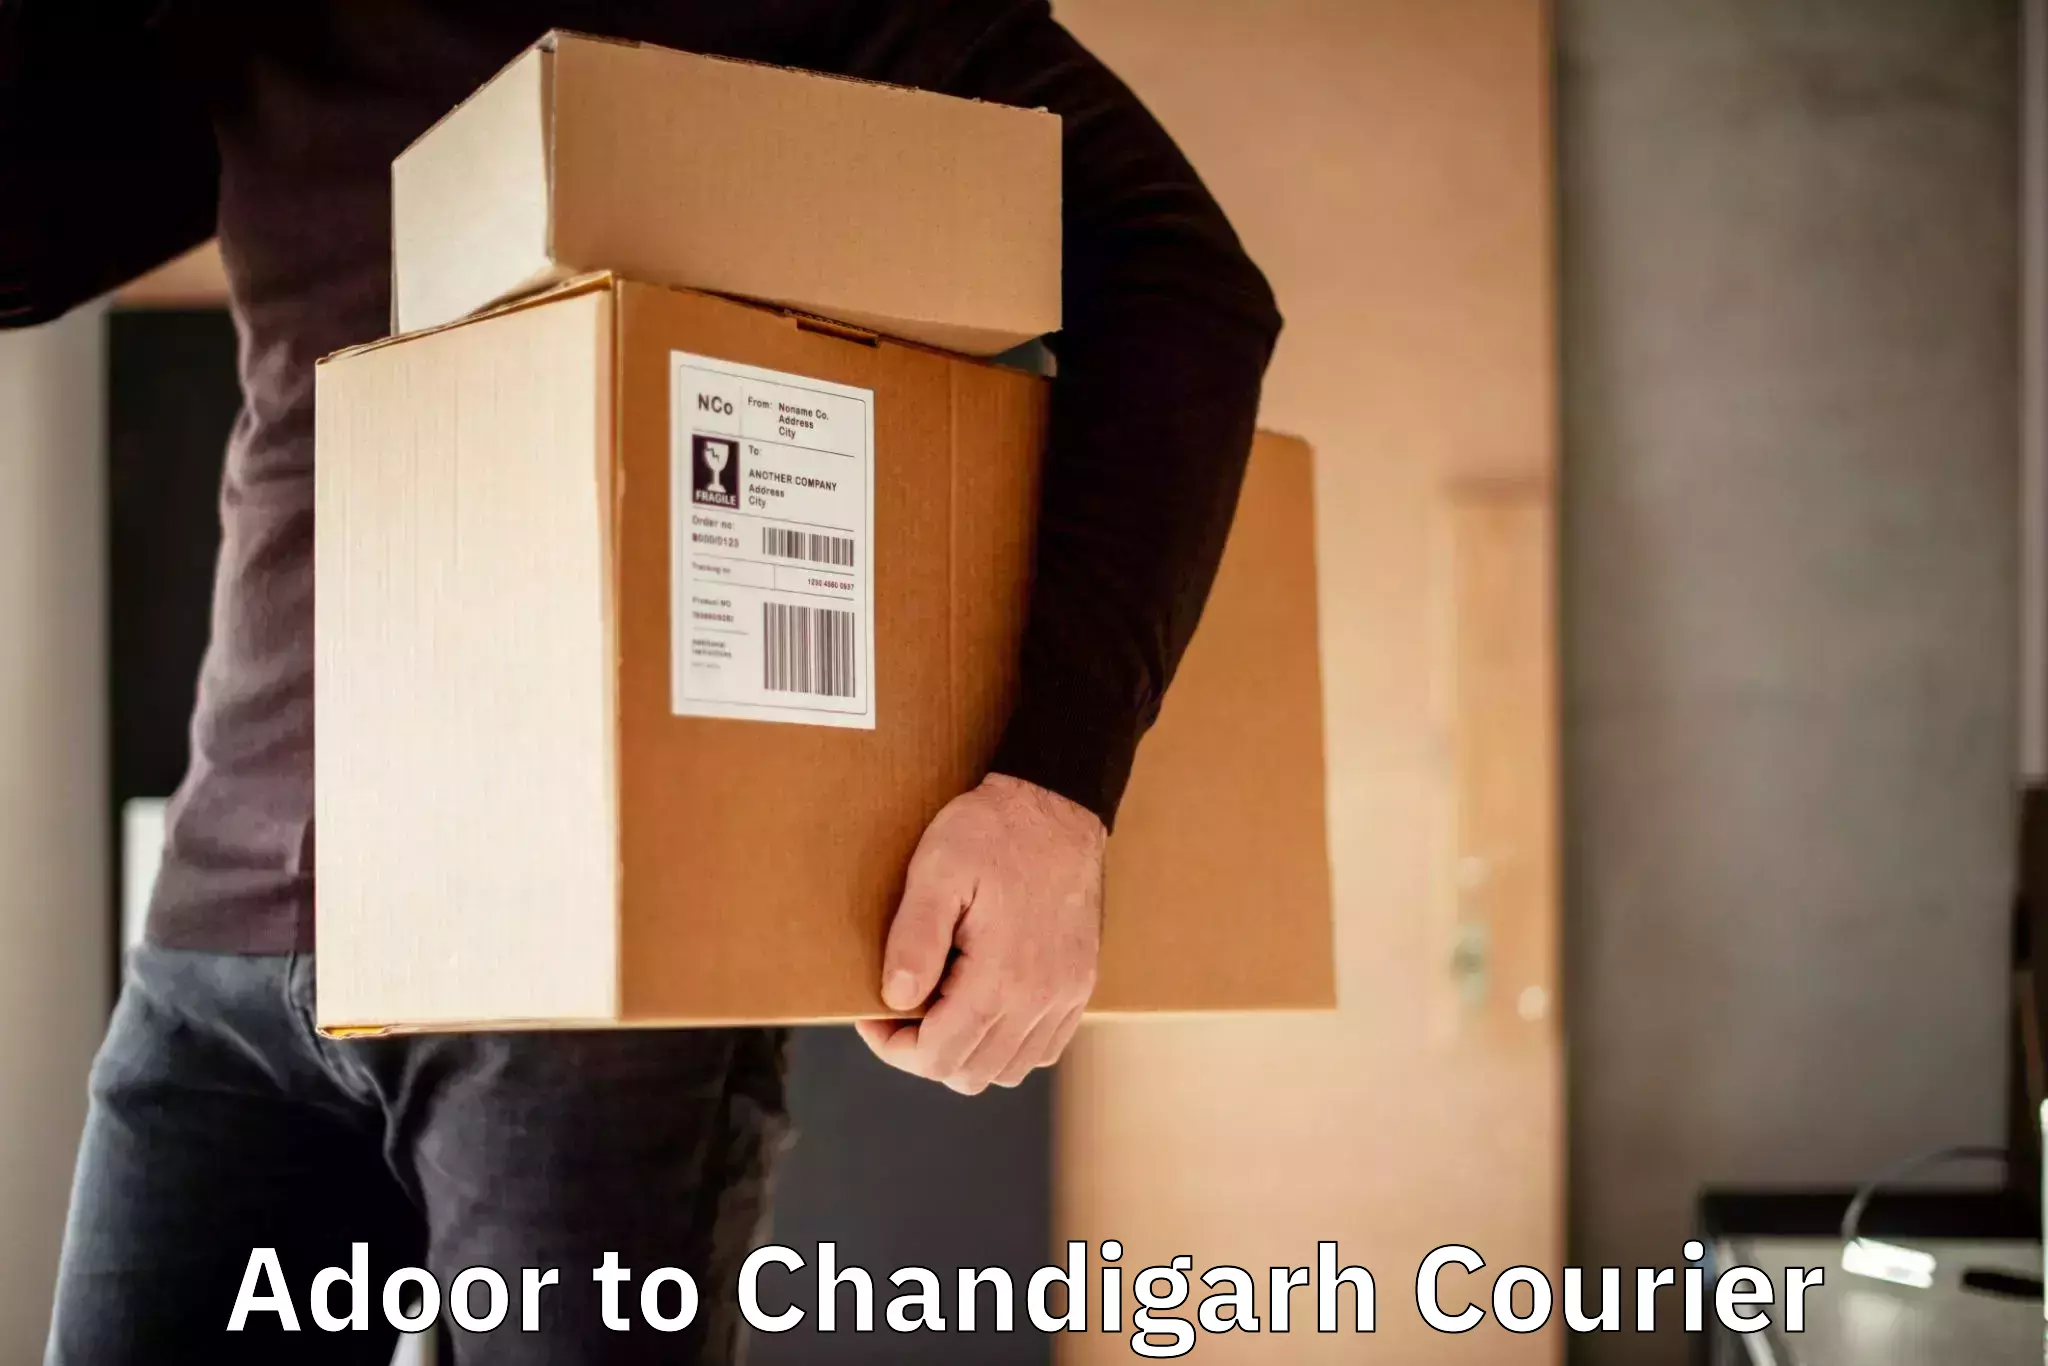 Versatile courier options Adoor to Chandigarh